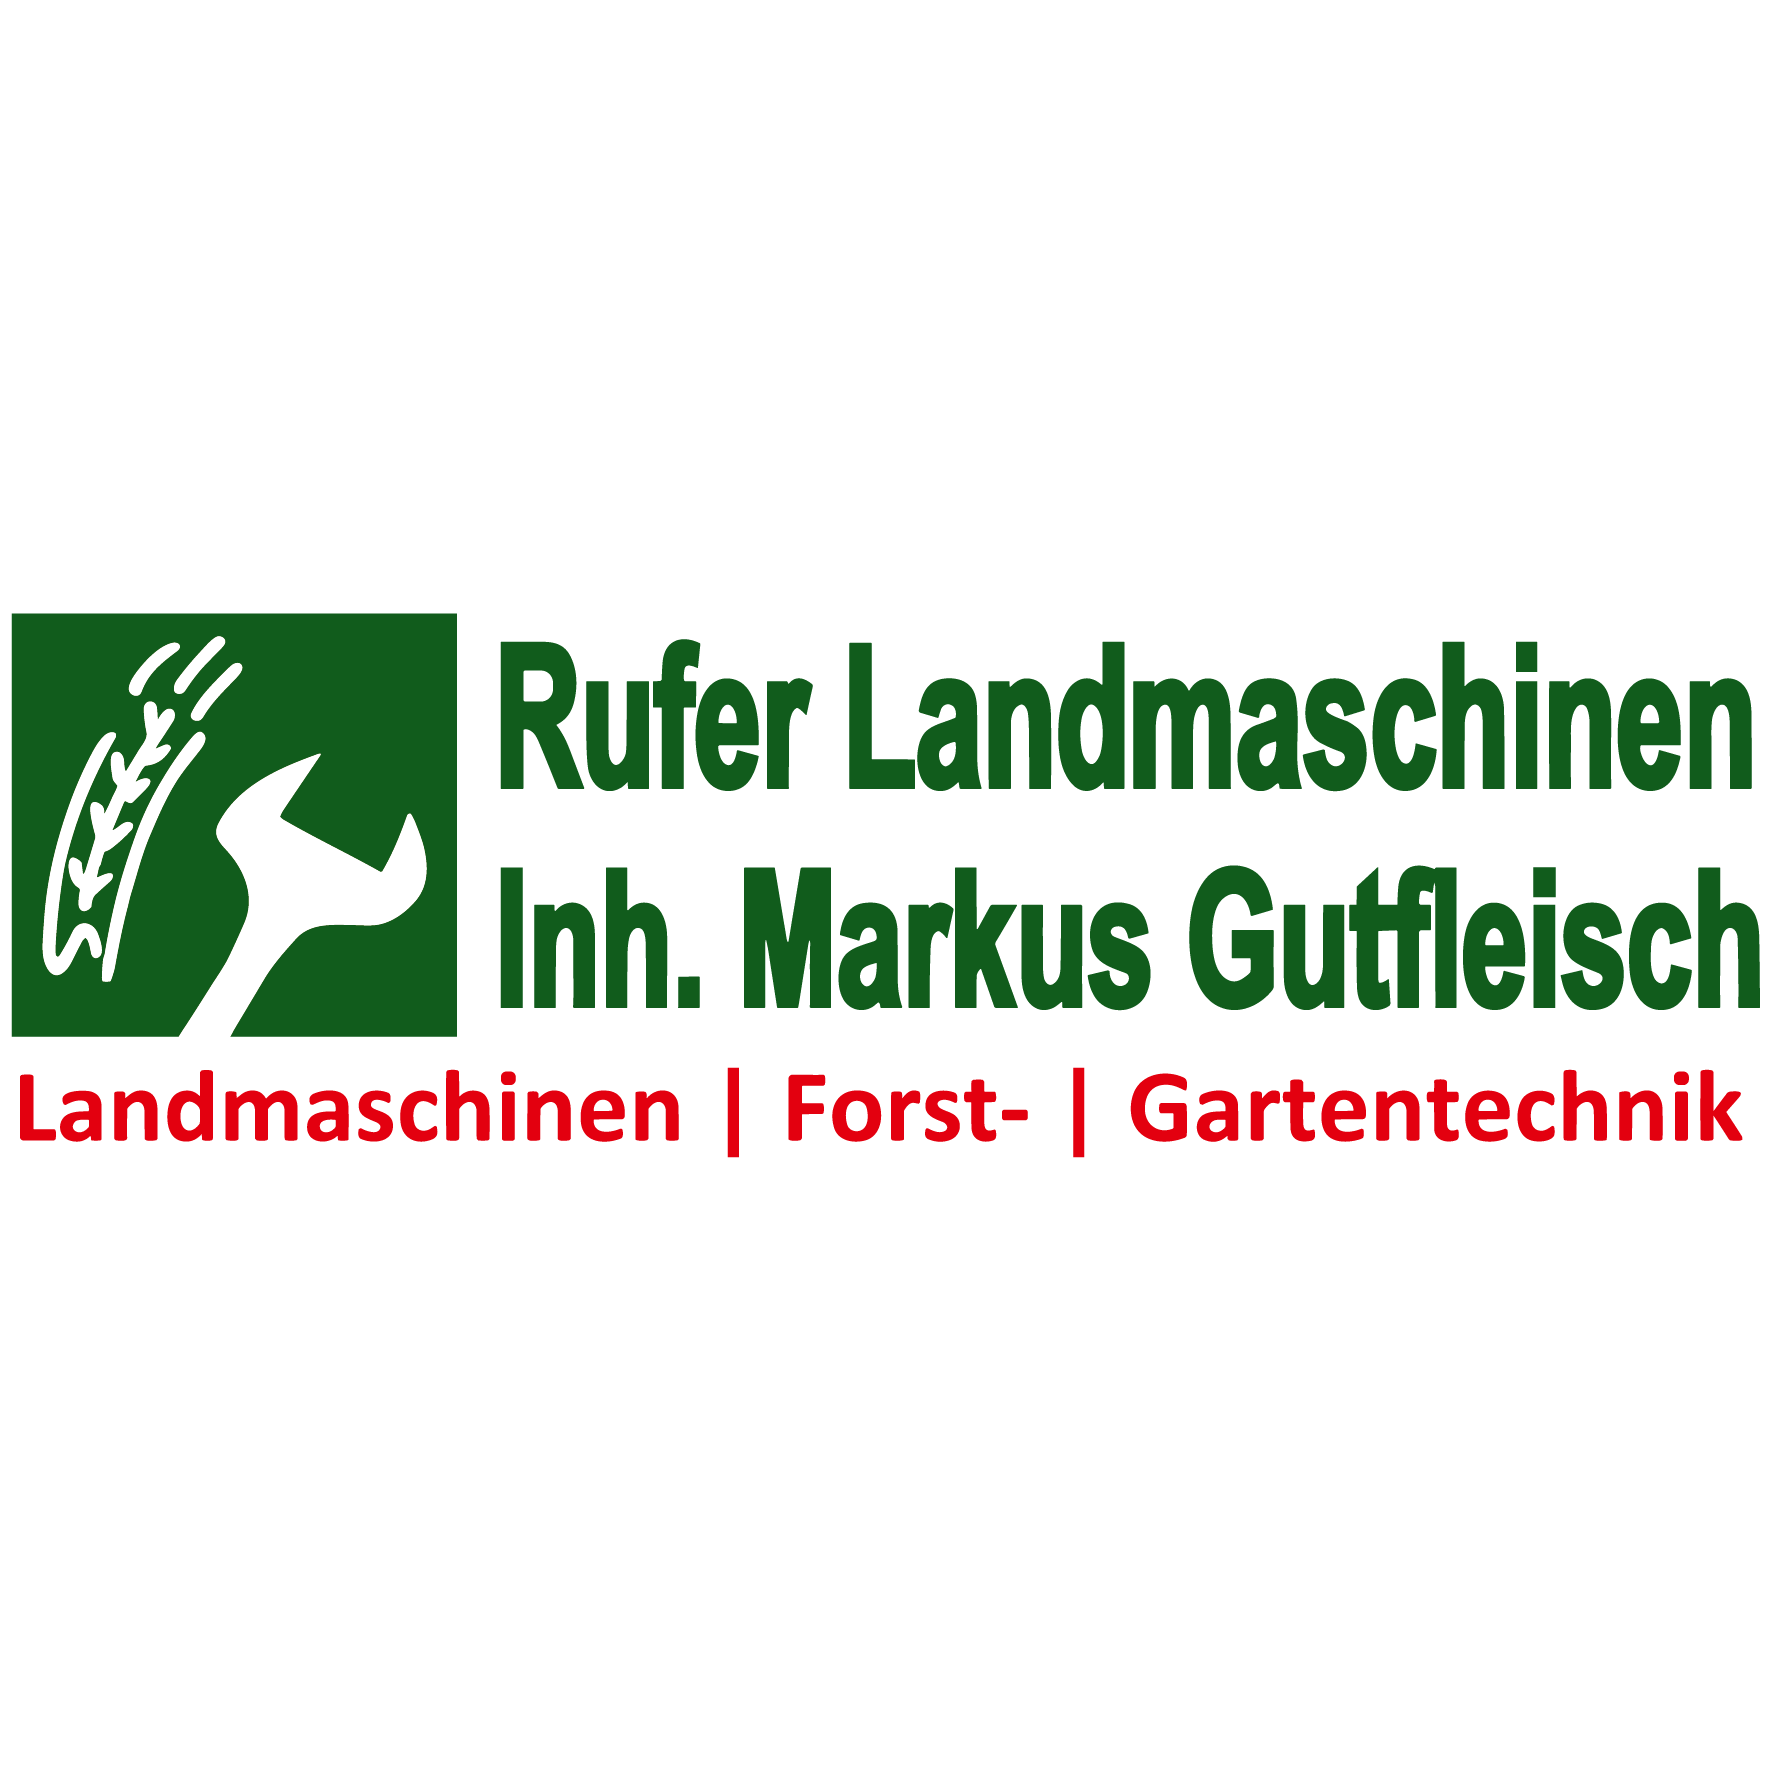 Rufer Landmaschinen, Inh. Markus Gutfleisch in Schriesheim - Logo